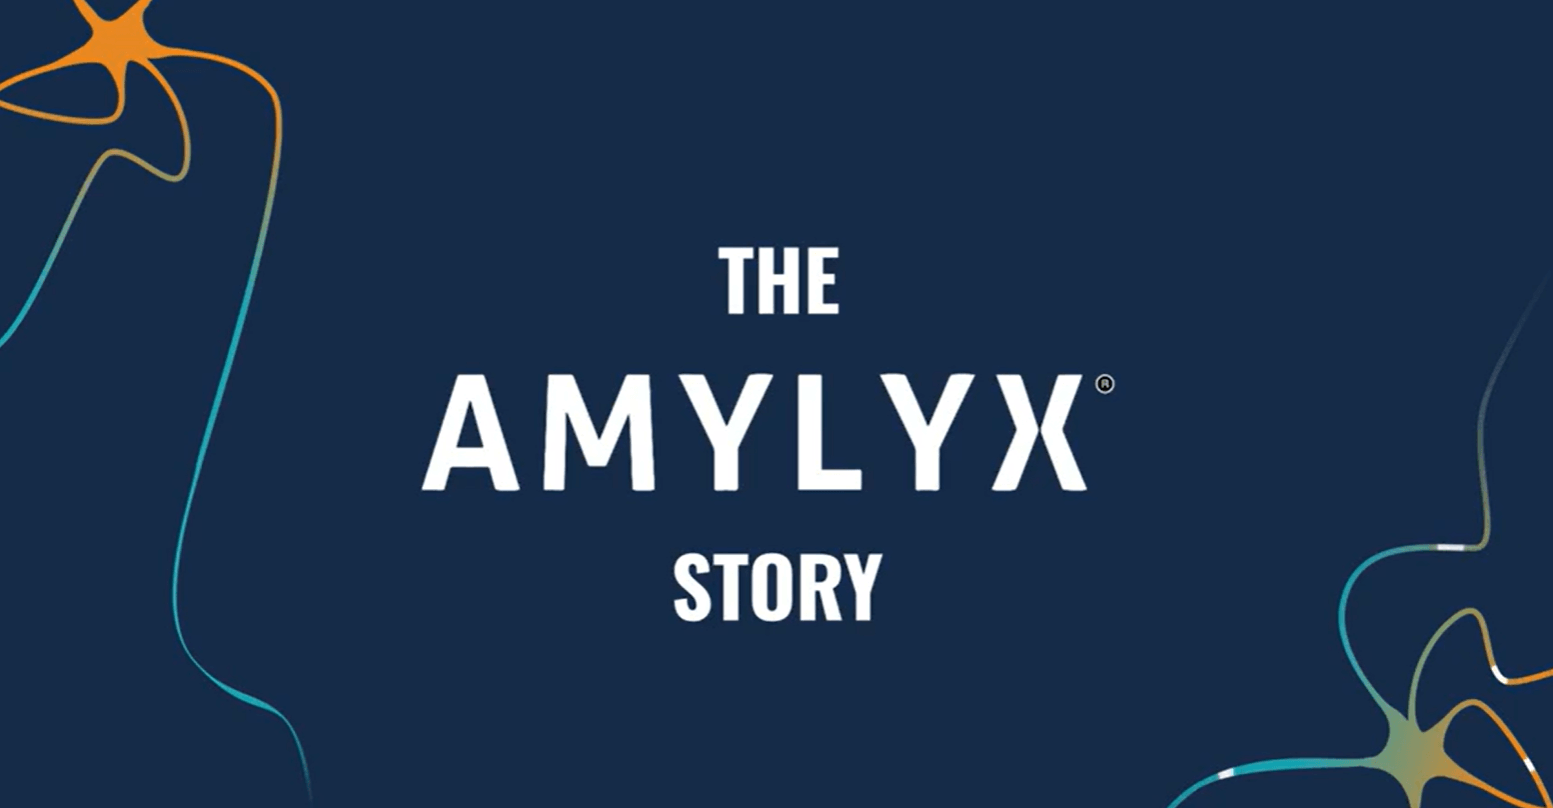 The Amylyx Story